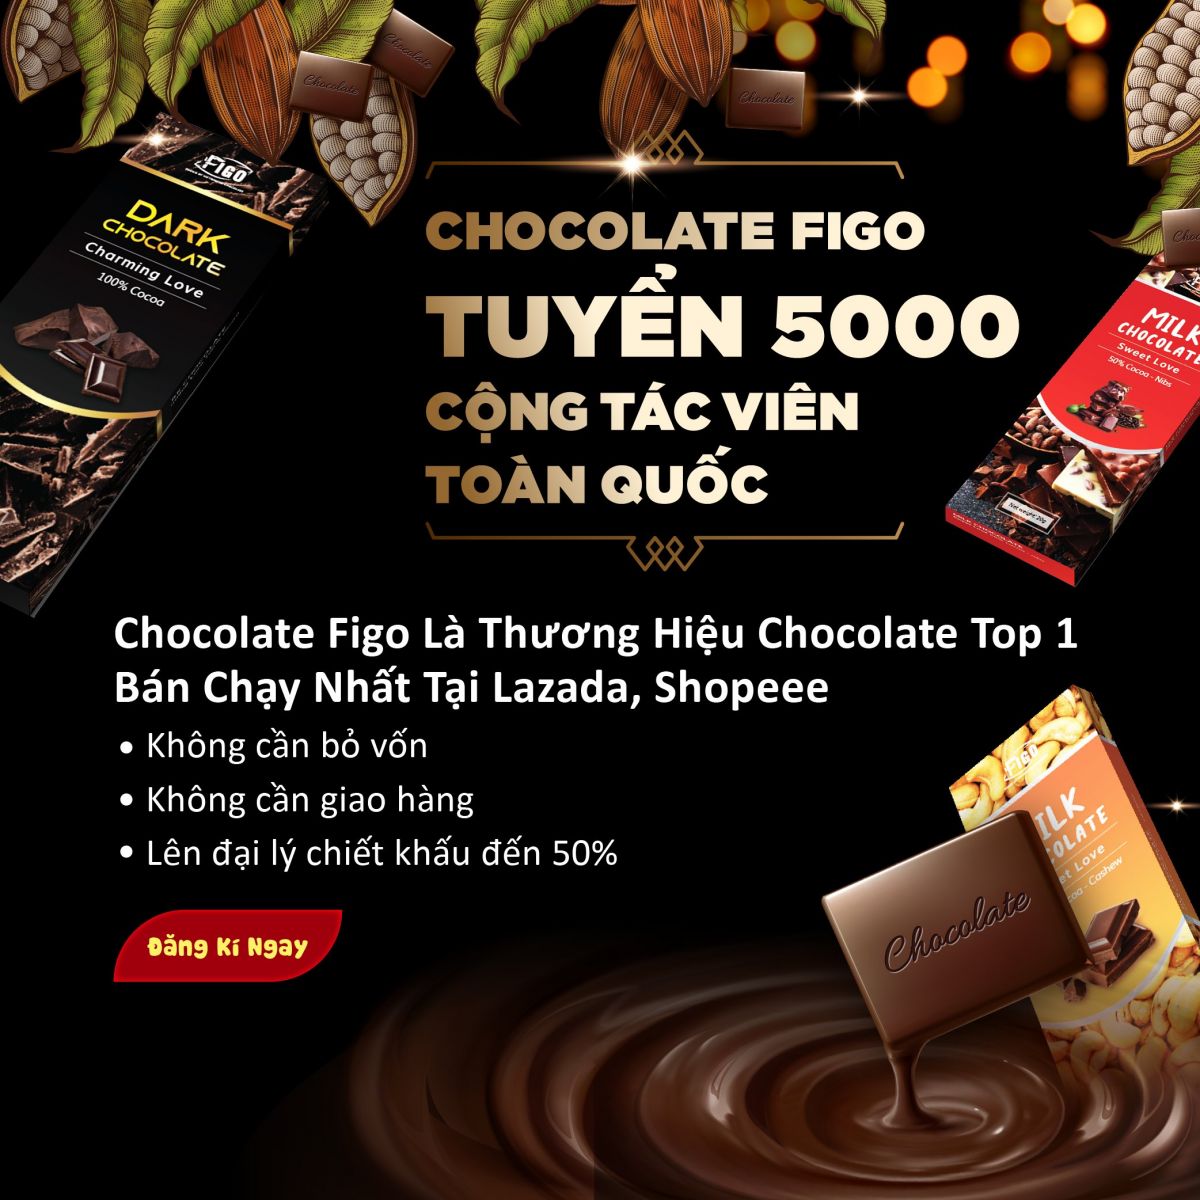 CHOCOLATE FIGO TUYỂN 5000 CỘNG TÁC VIÊN TOÀN QUỐC